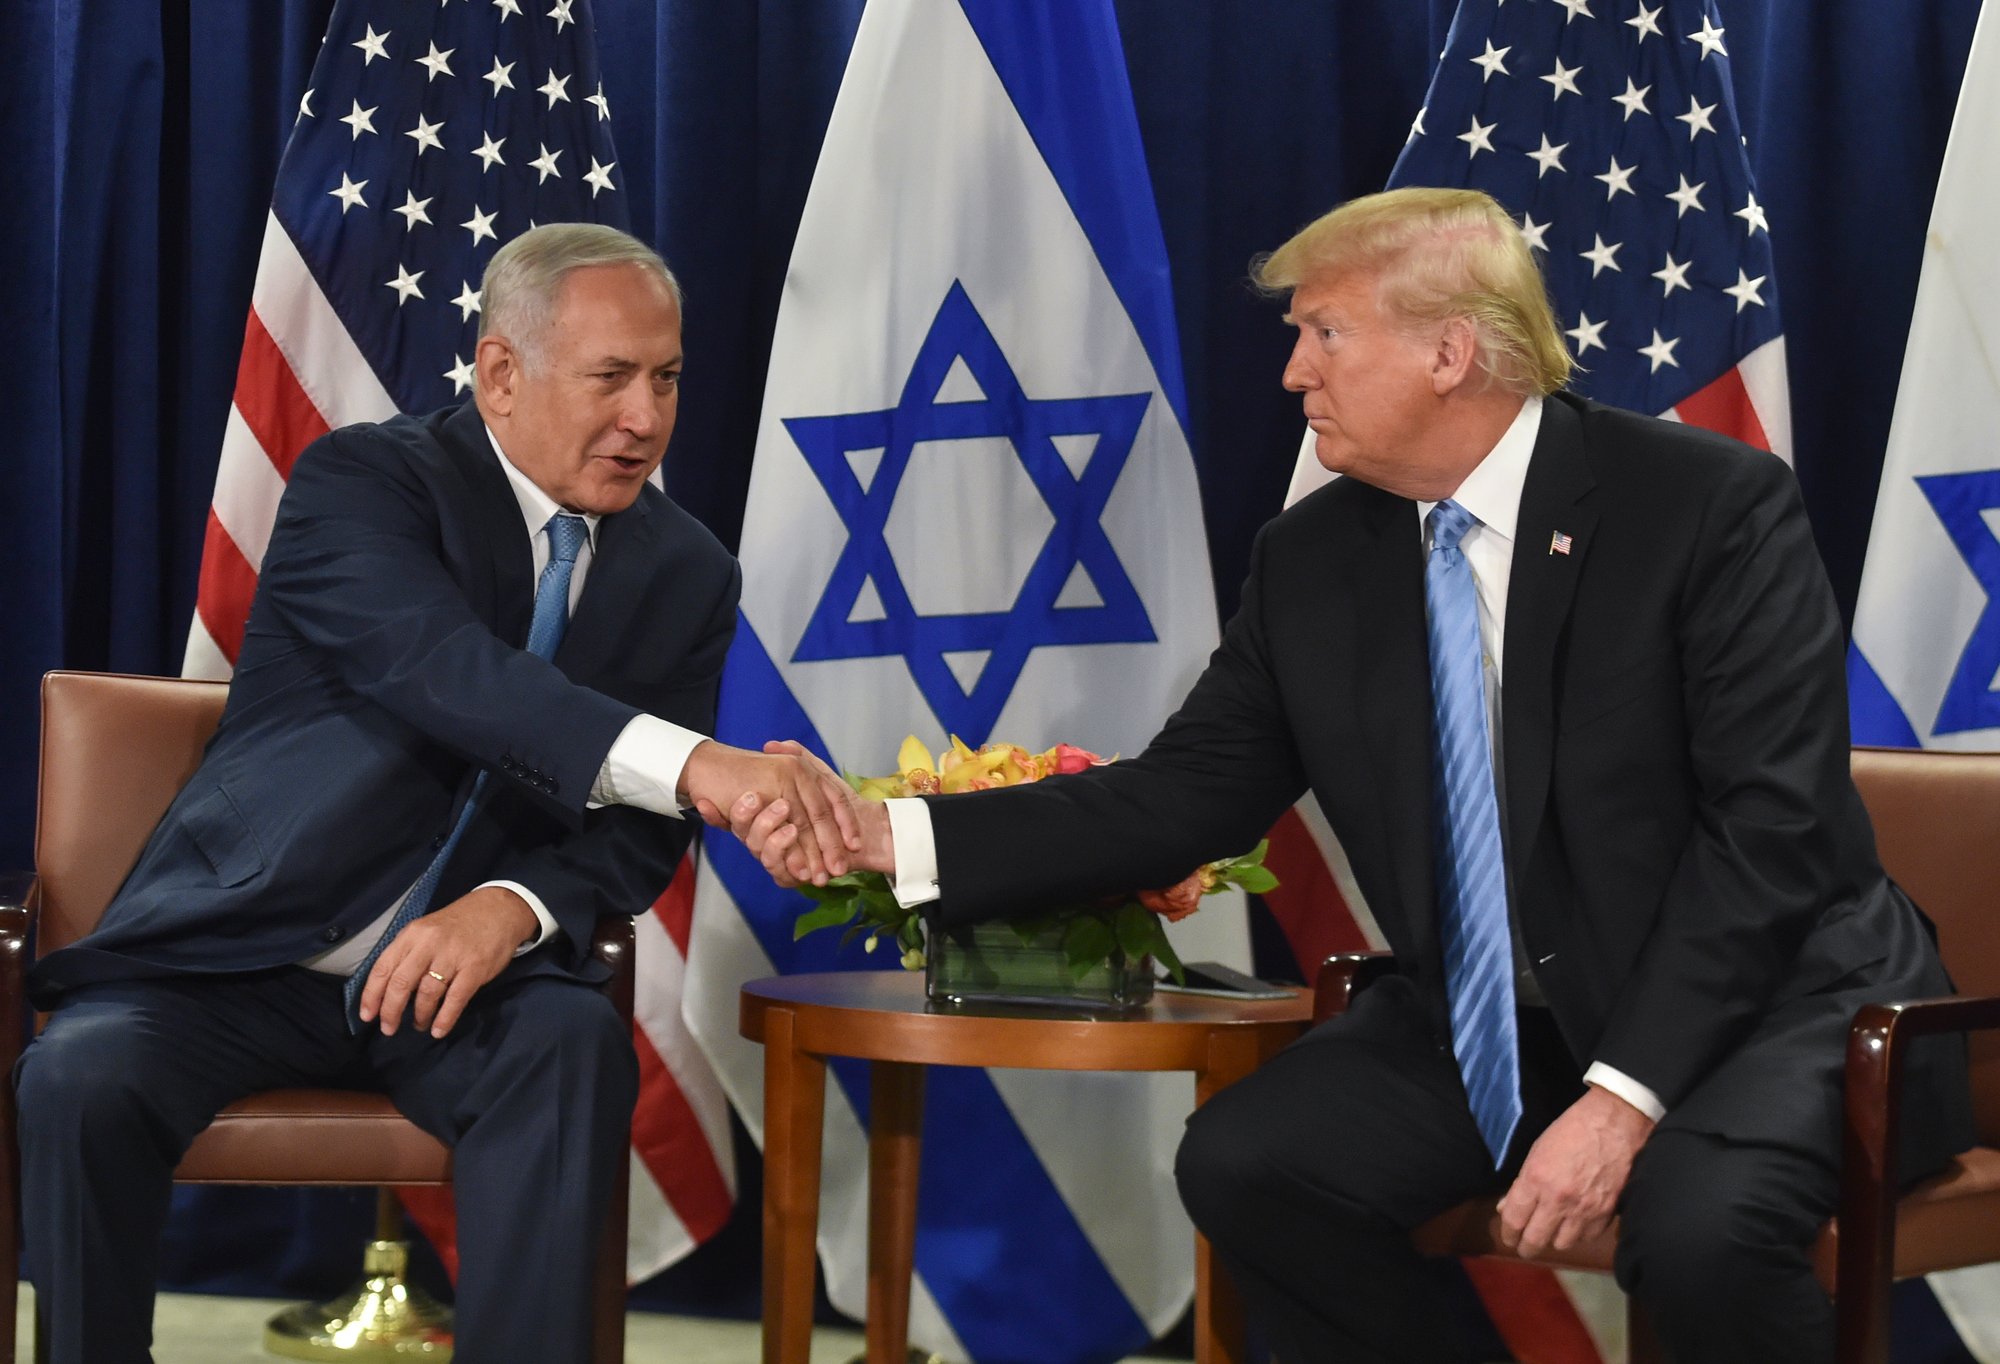 Trump: Bibi never wanted peace